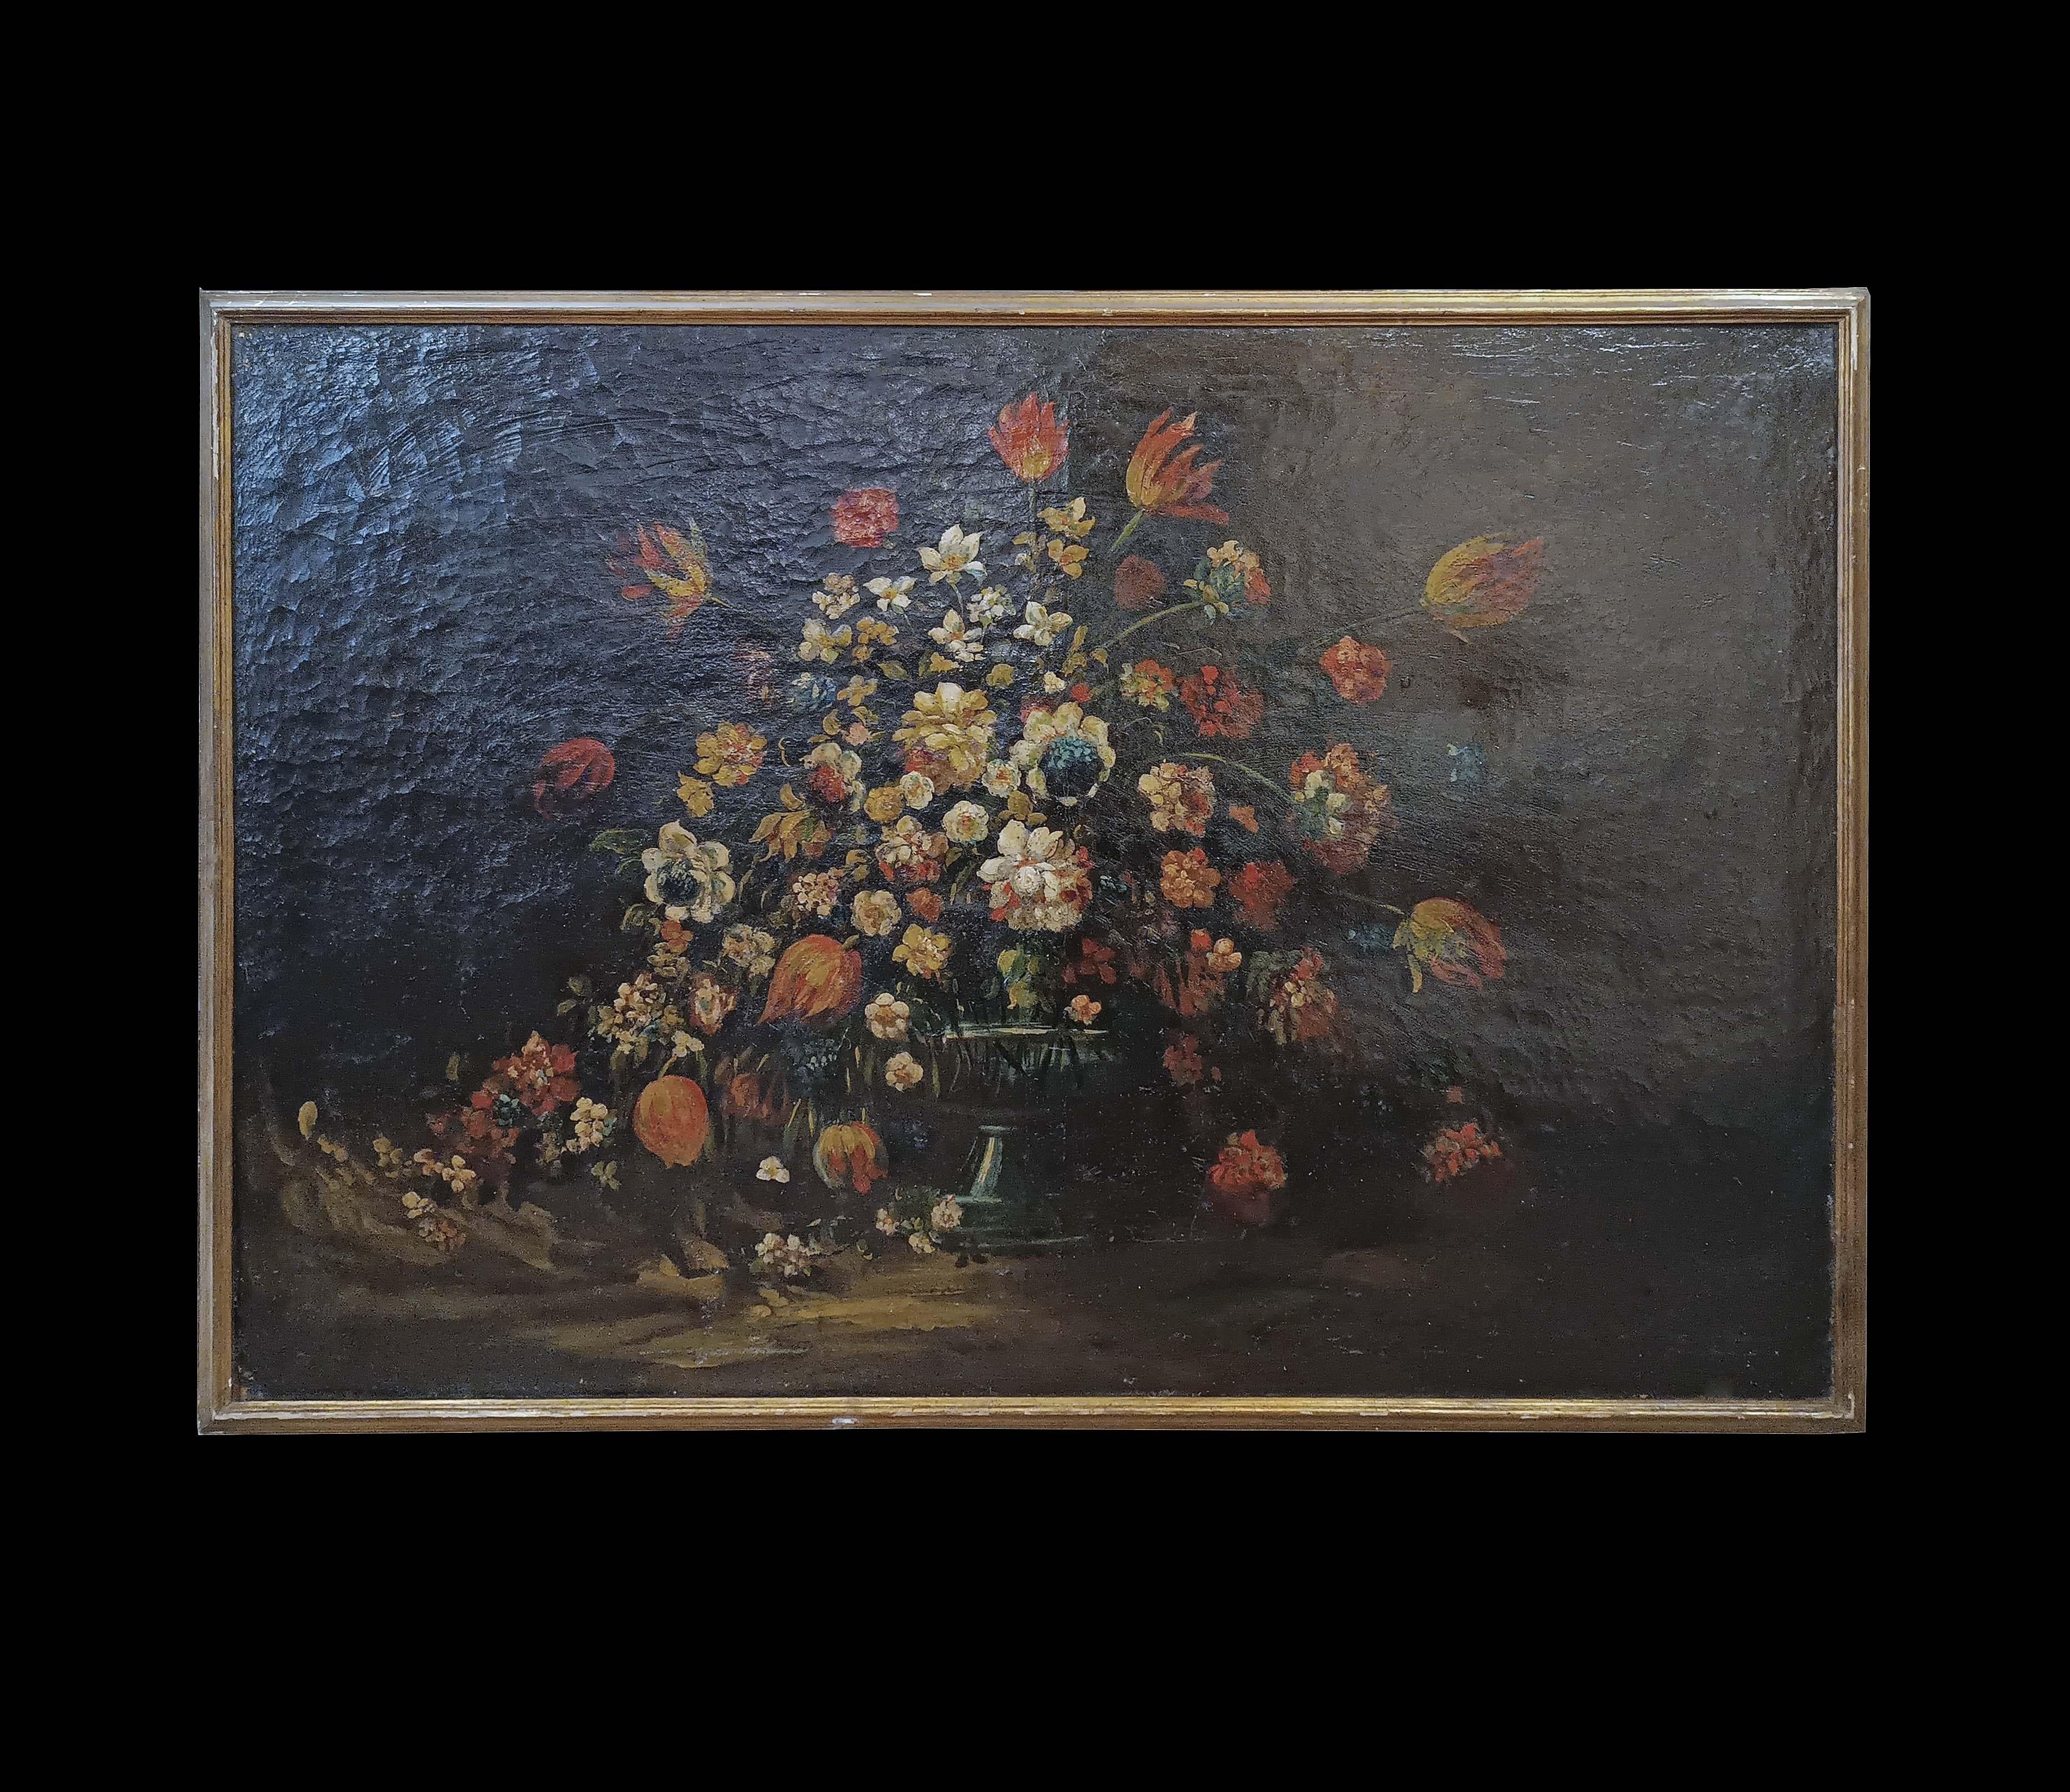 Prächtiges Ölgemälde auf Leinwand, das ein Stillleben mit Blumen in einer Vase ähnlich einem klassischen Kantharos zeigt. Die weißen, roten und gelben Blumen bilden einen lebhaften Kontrast zu dem dunklen Hintergrund, während das Spiel der